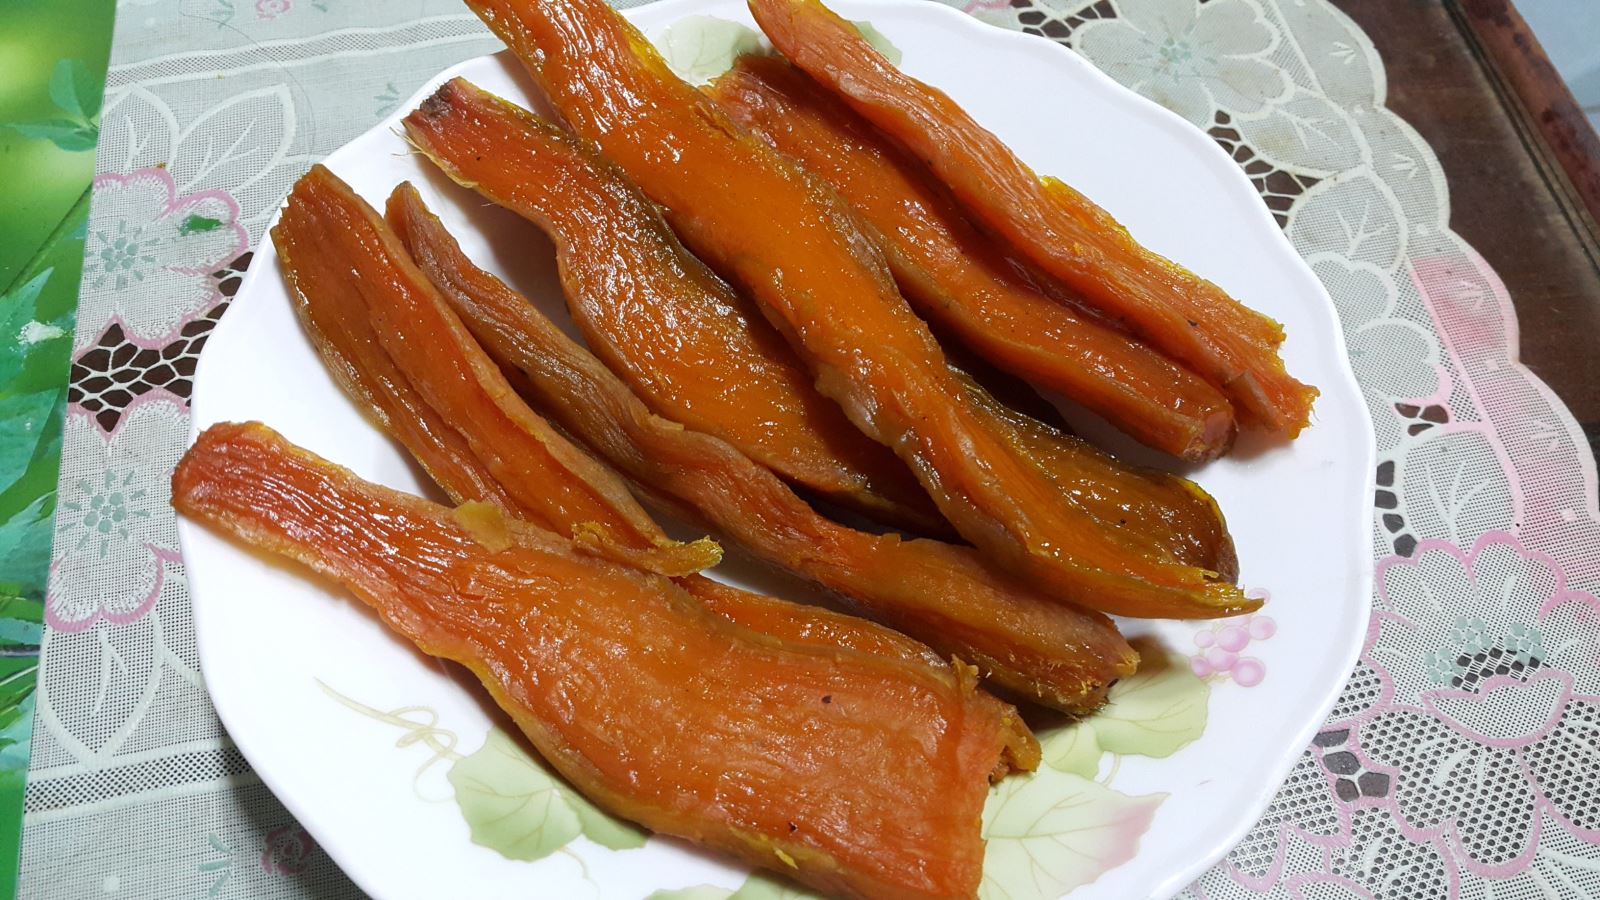 Khoai deo là một thức quà ngon ngọt vô cùng đặc biệt của Quảng Bình